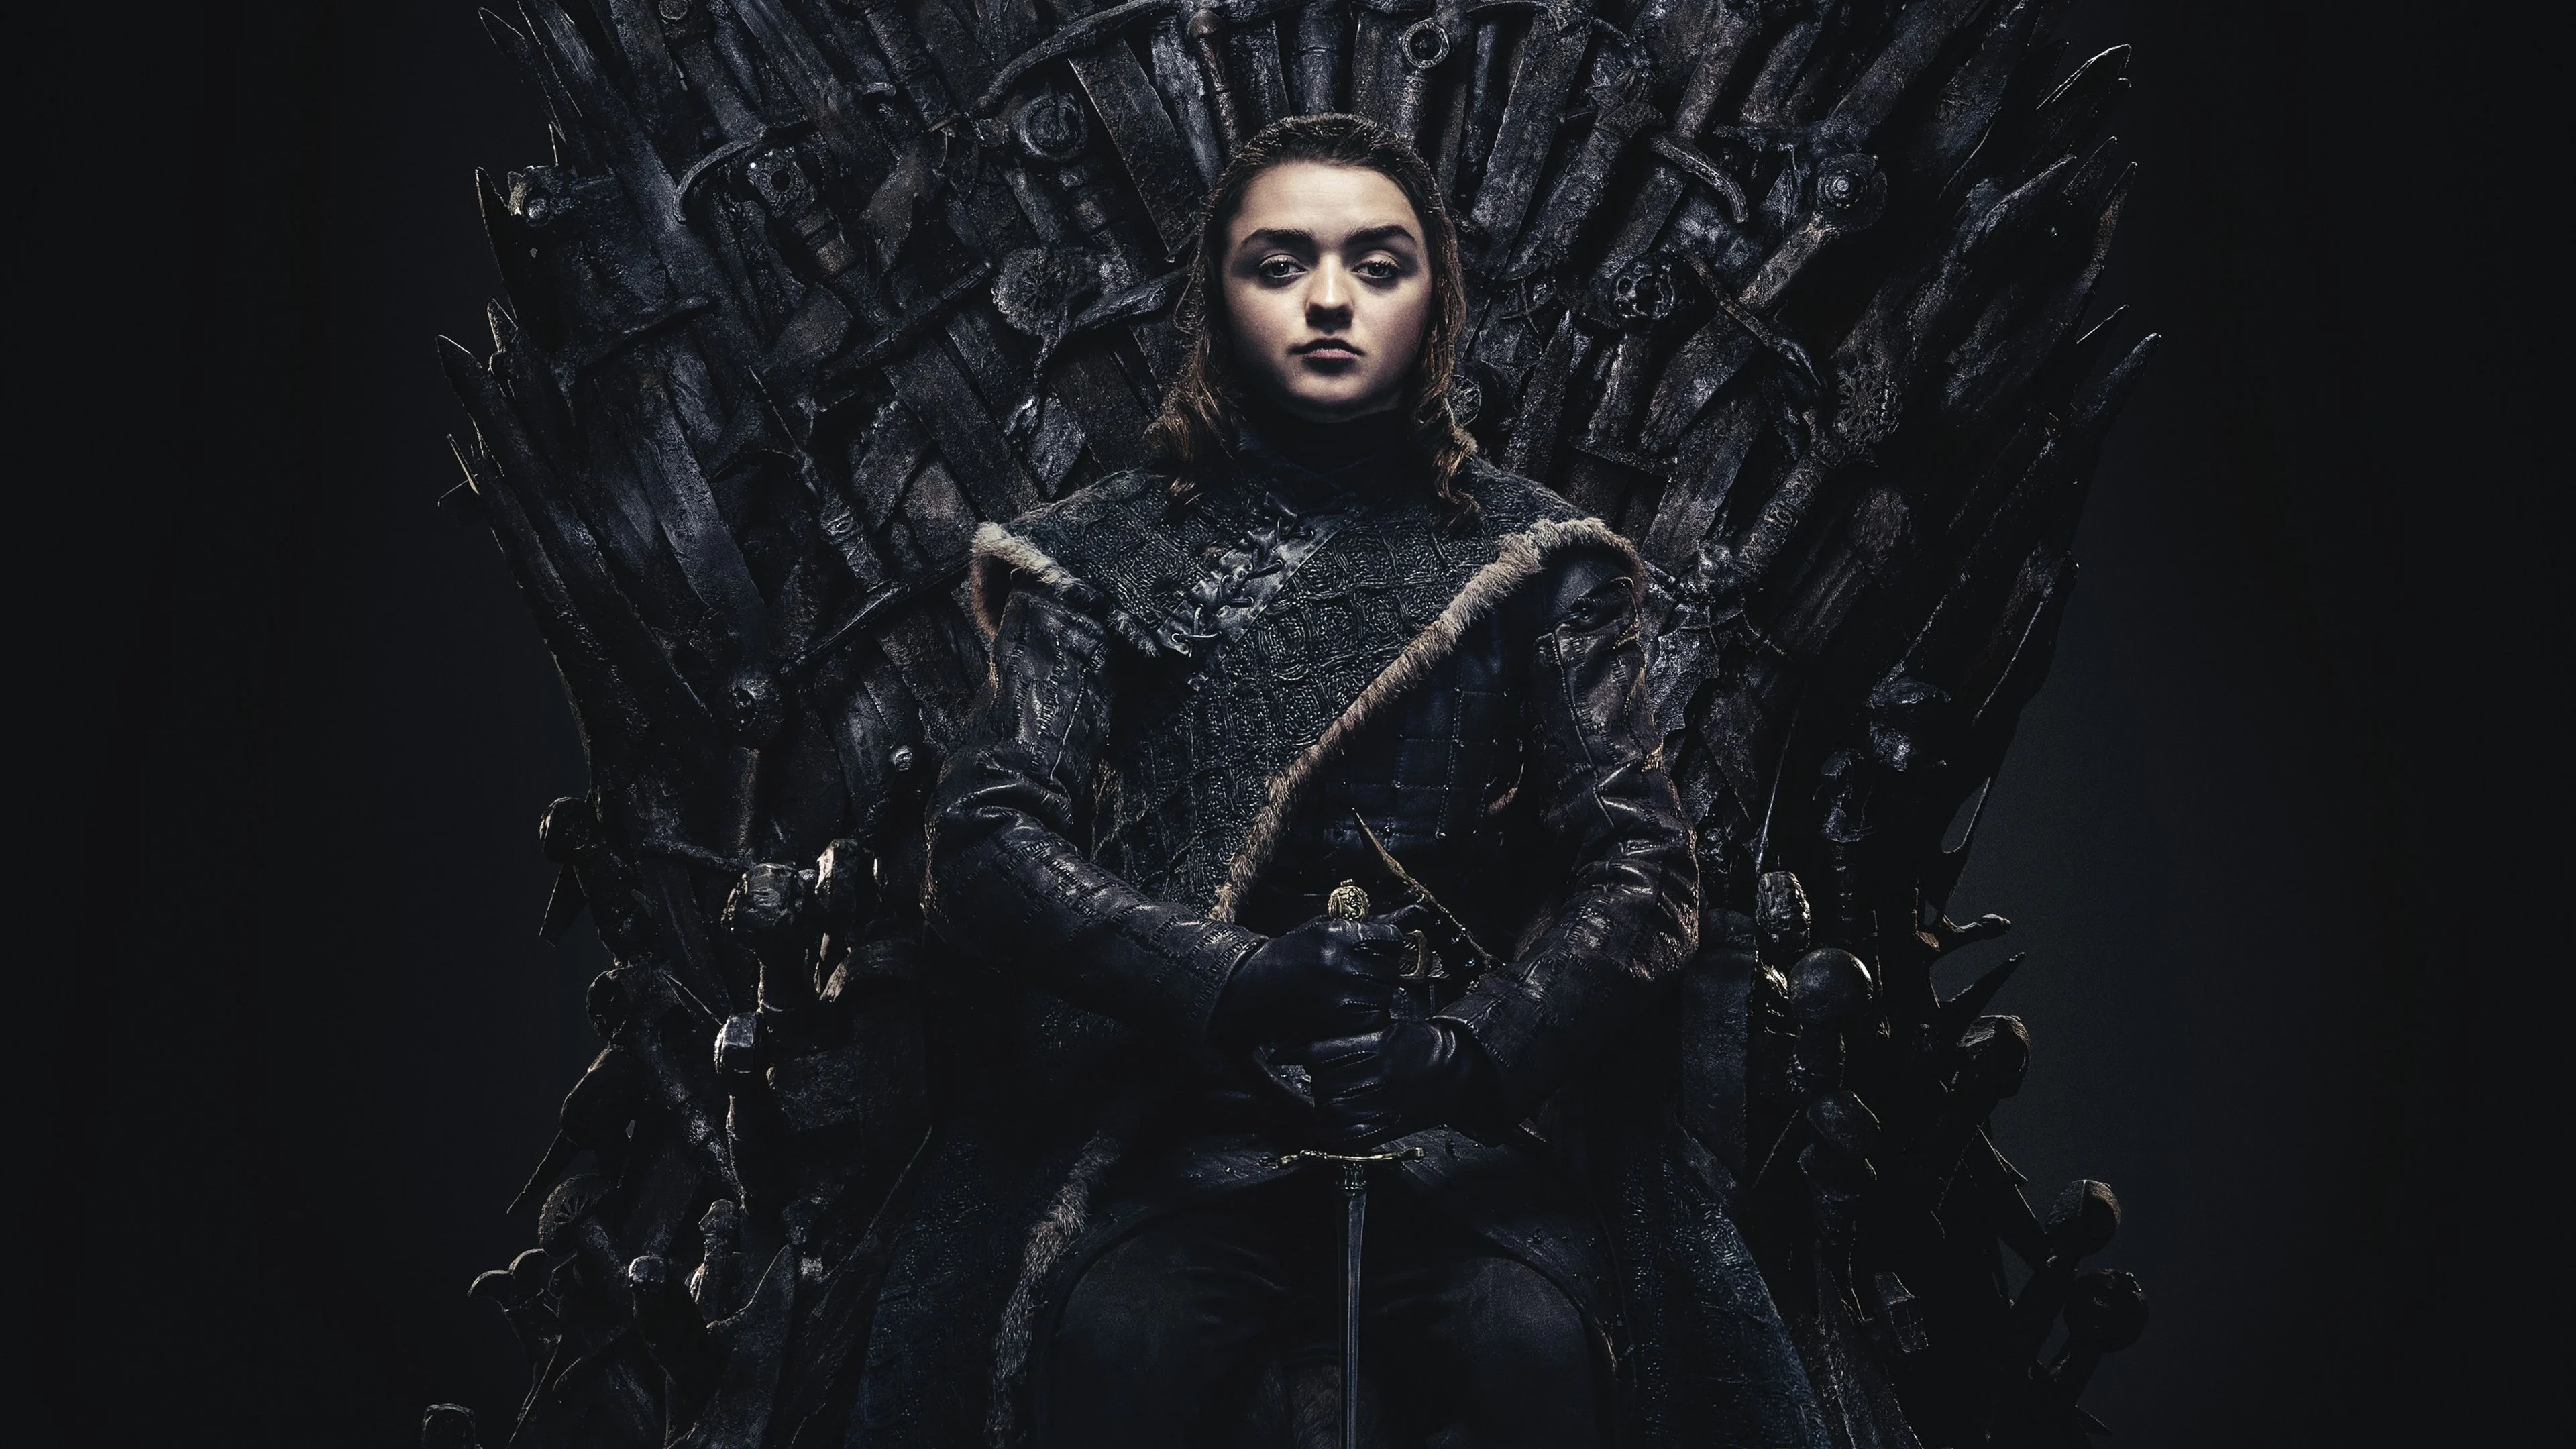 Game of Thrones, Arya Stark, Wallpapers, Backgrounds, 3840x2160 4K Desktop